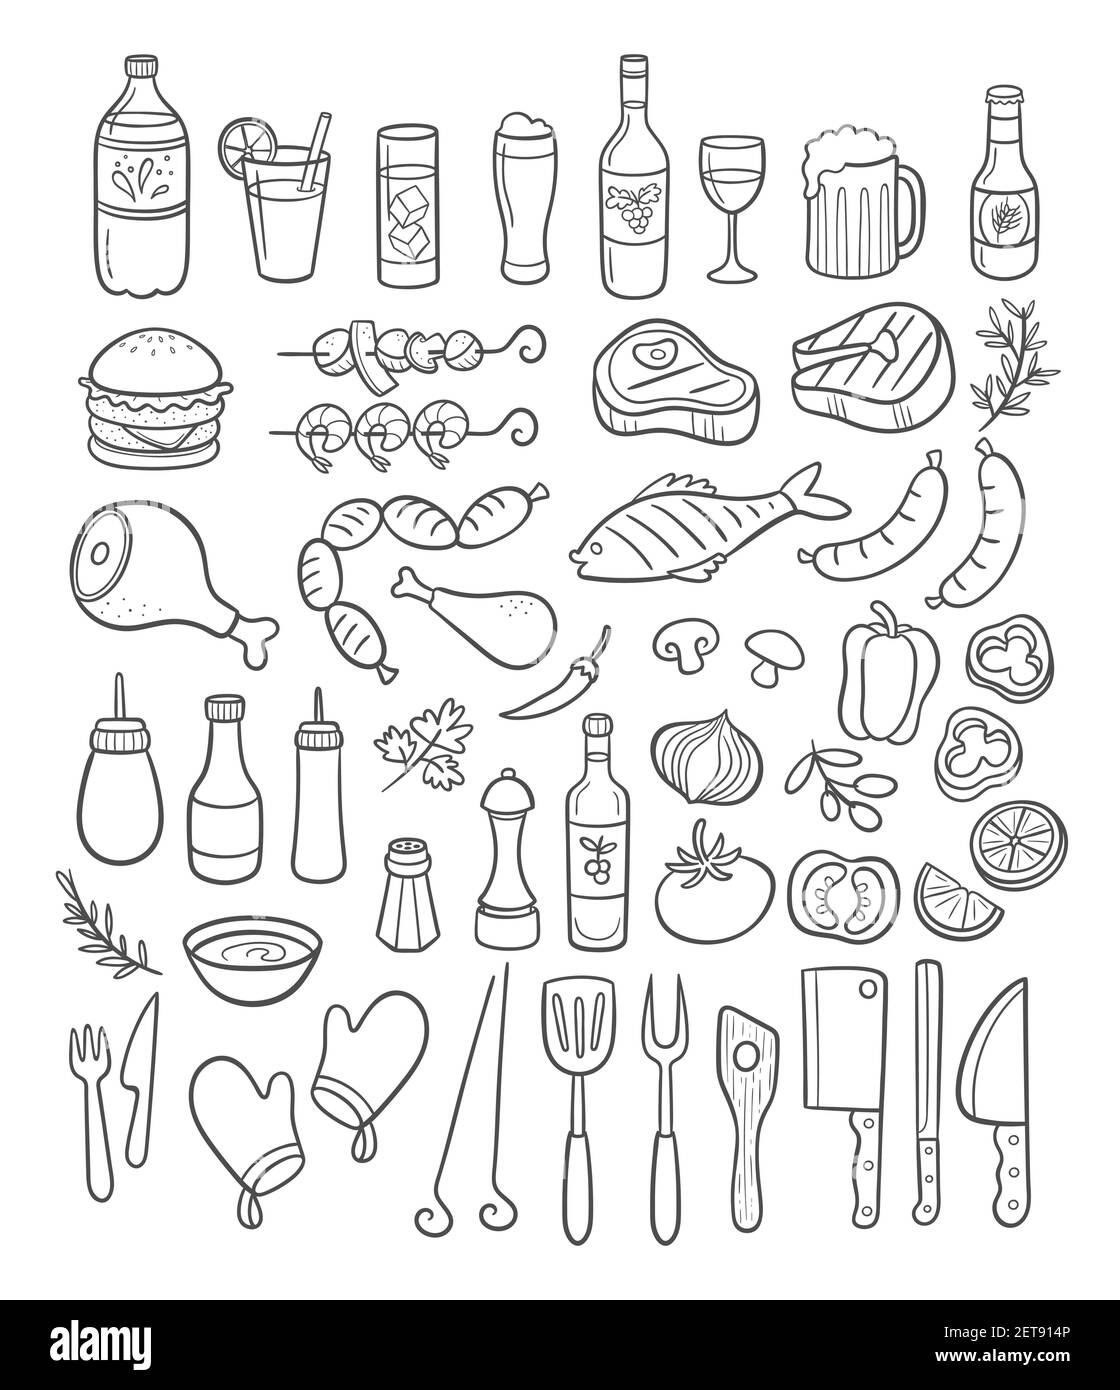 Collezione di elementi barbecue disegnati a mano. Bevande, carne, pesce alla griglia, verdure, salsicce, condimenti e forniture. Illustrazione vettoriale. Illustrazione Vettoriale